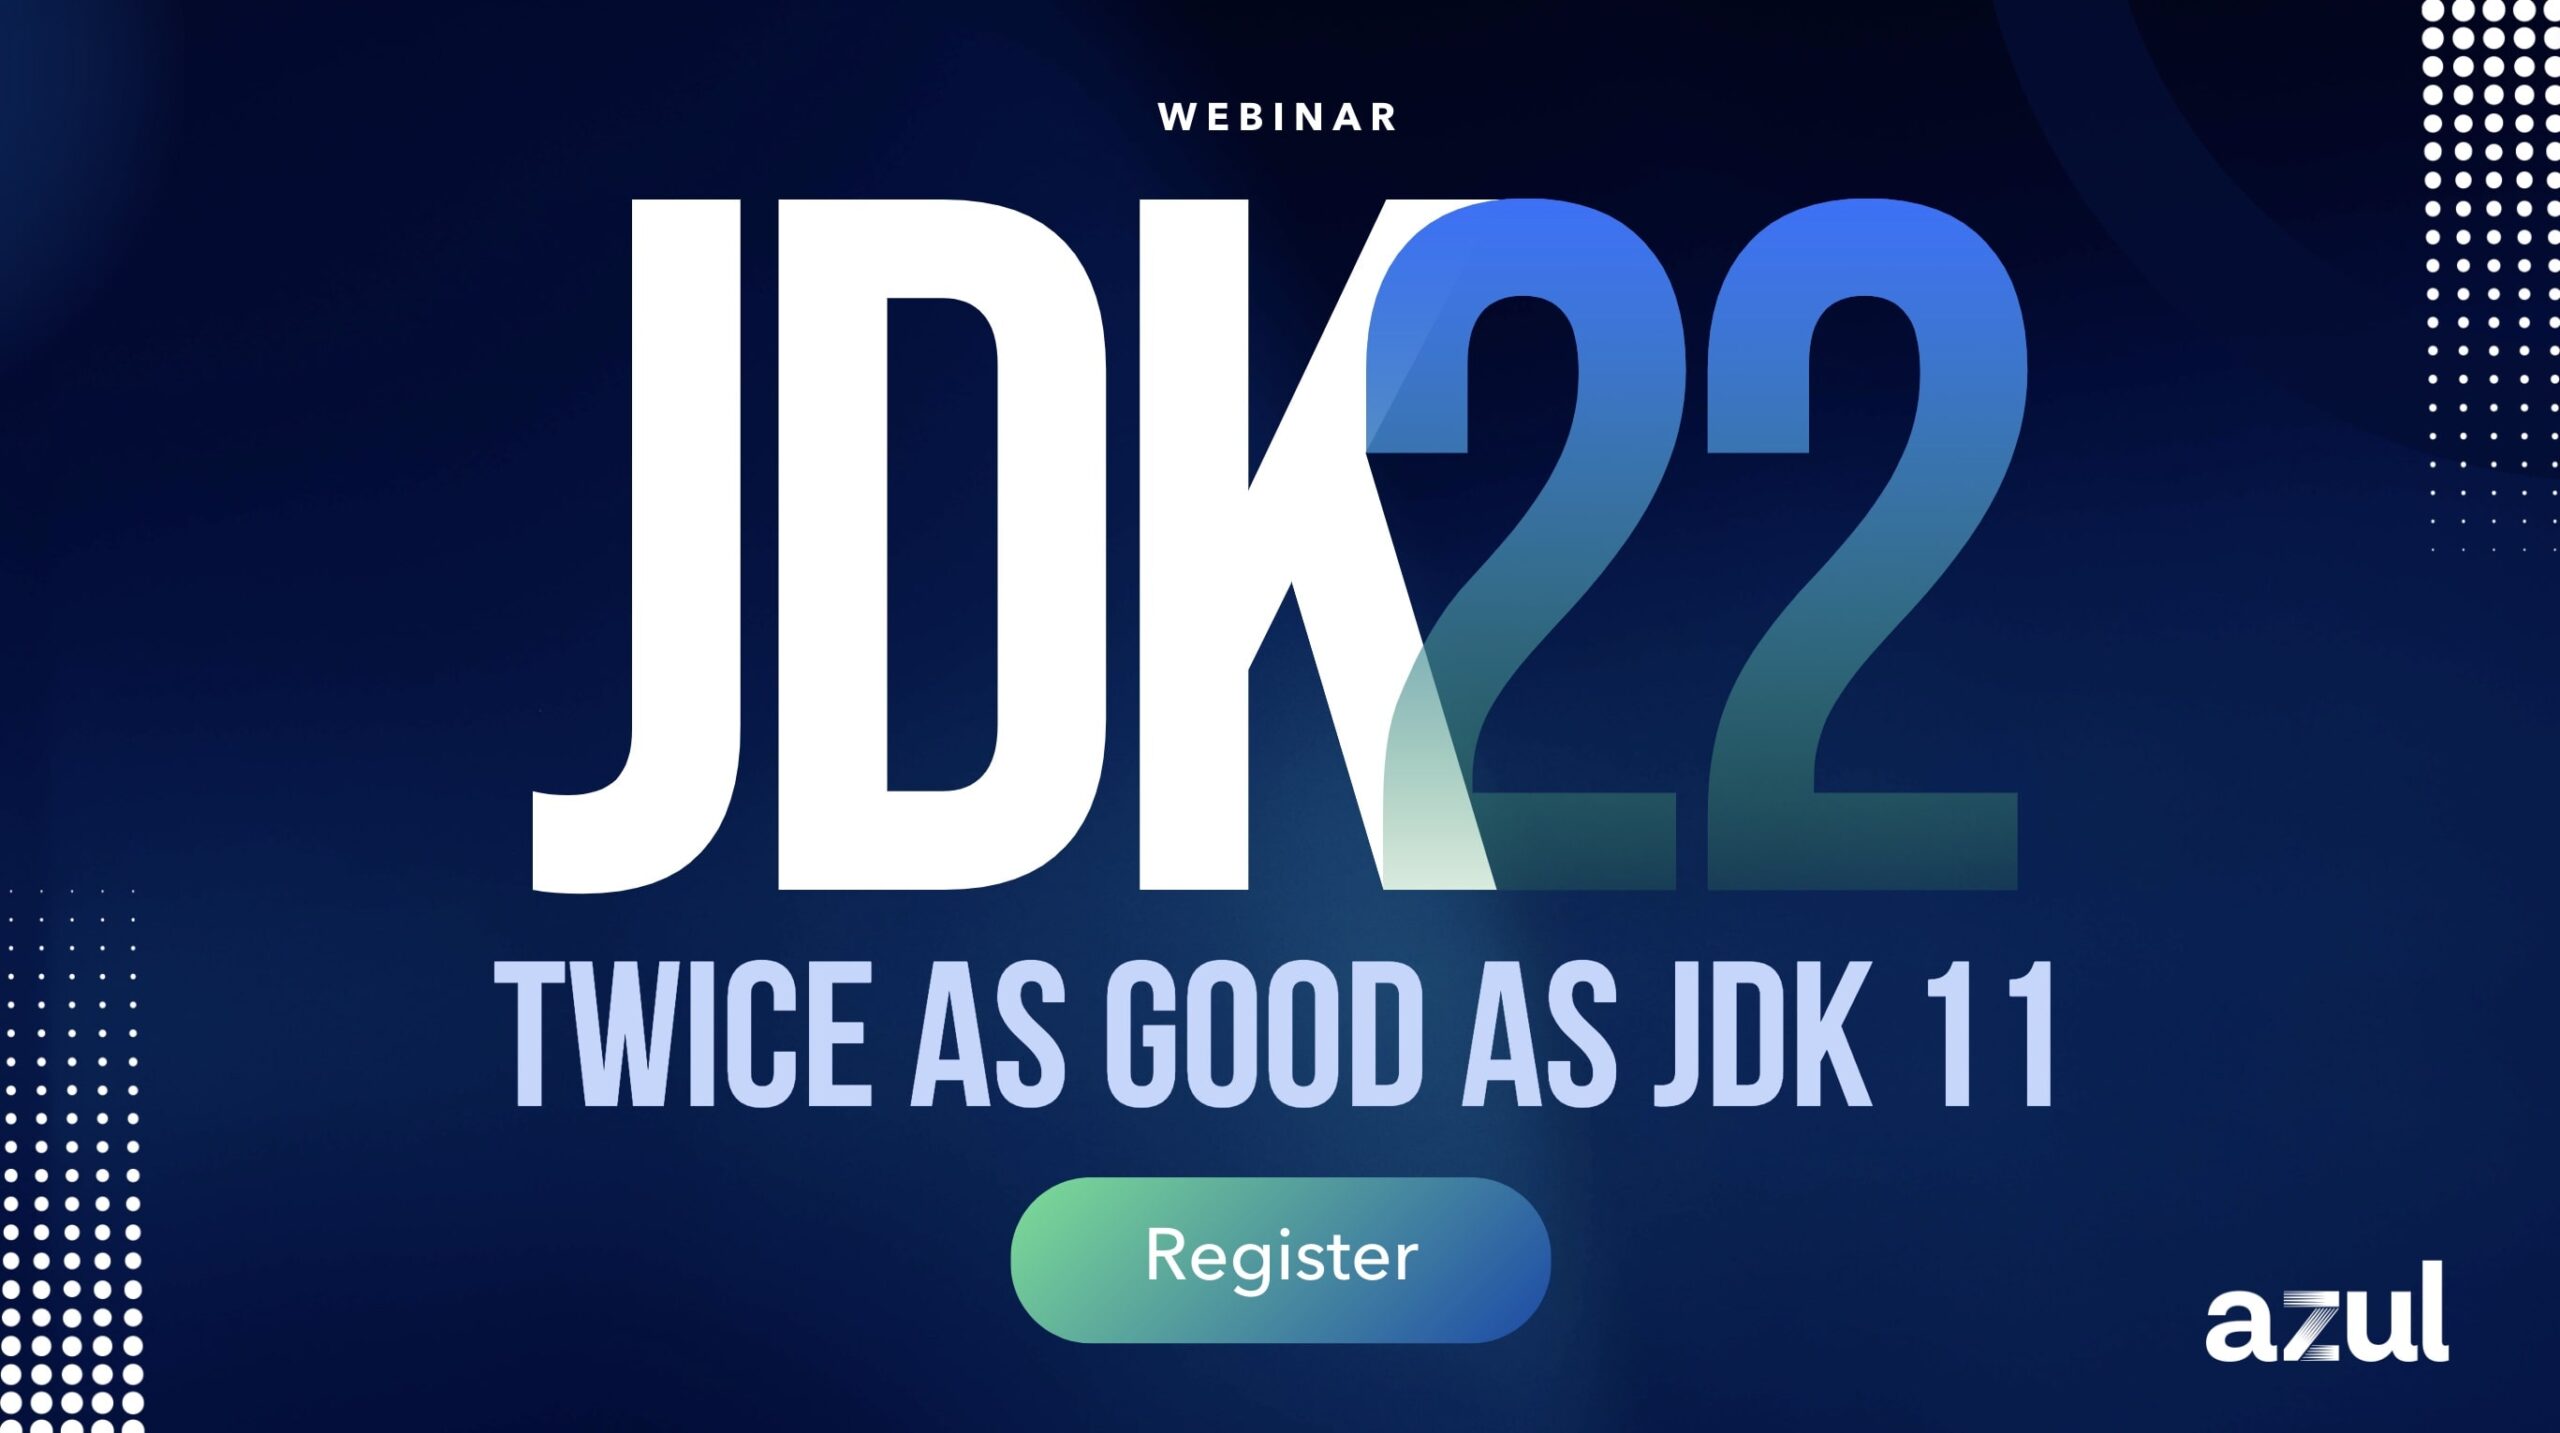 JDK 22: Twice as Good as JDK 11 